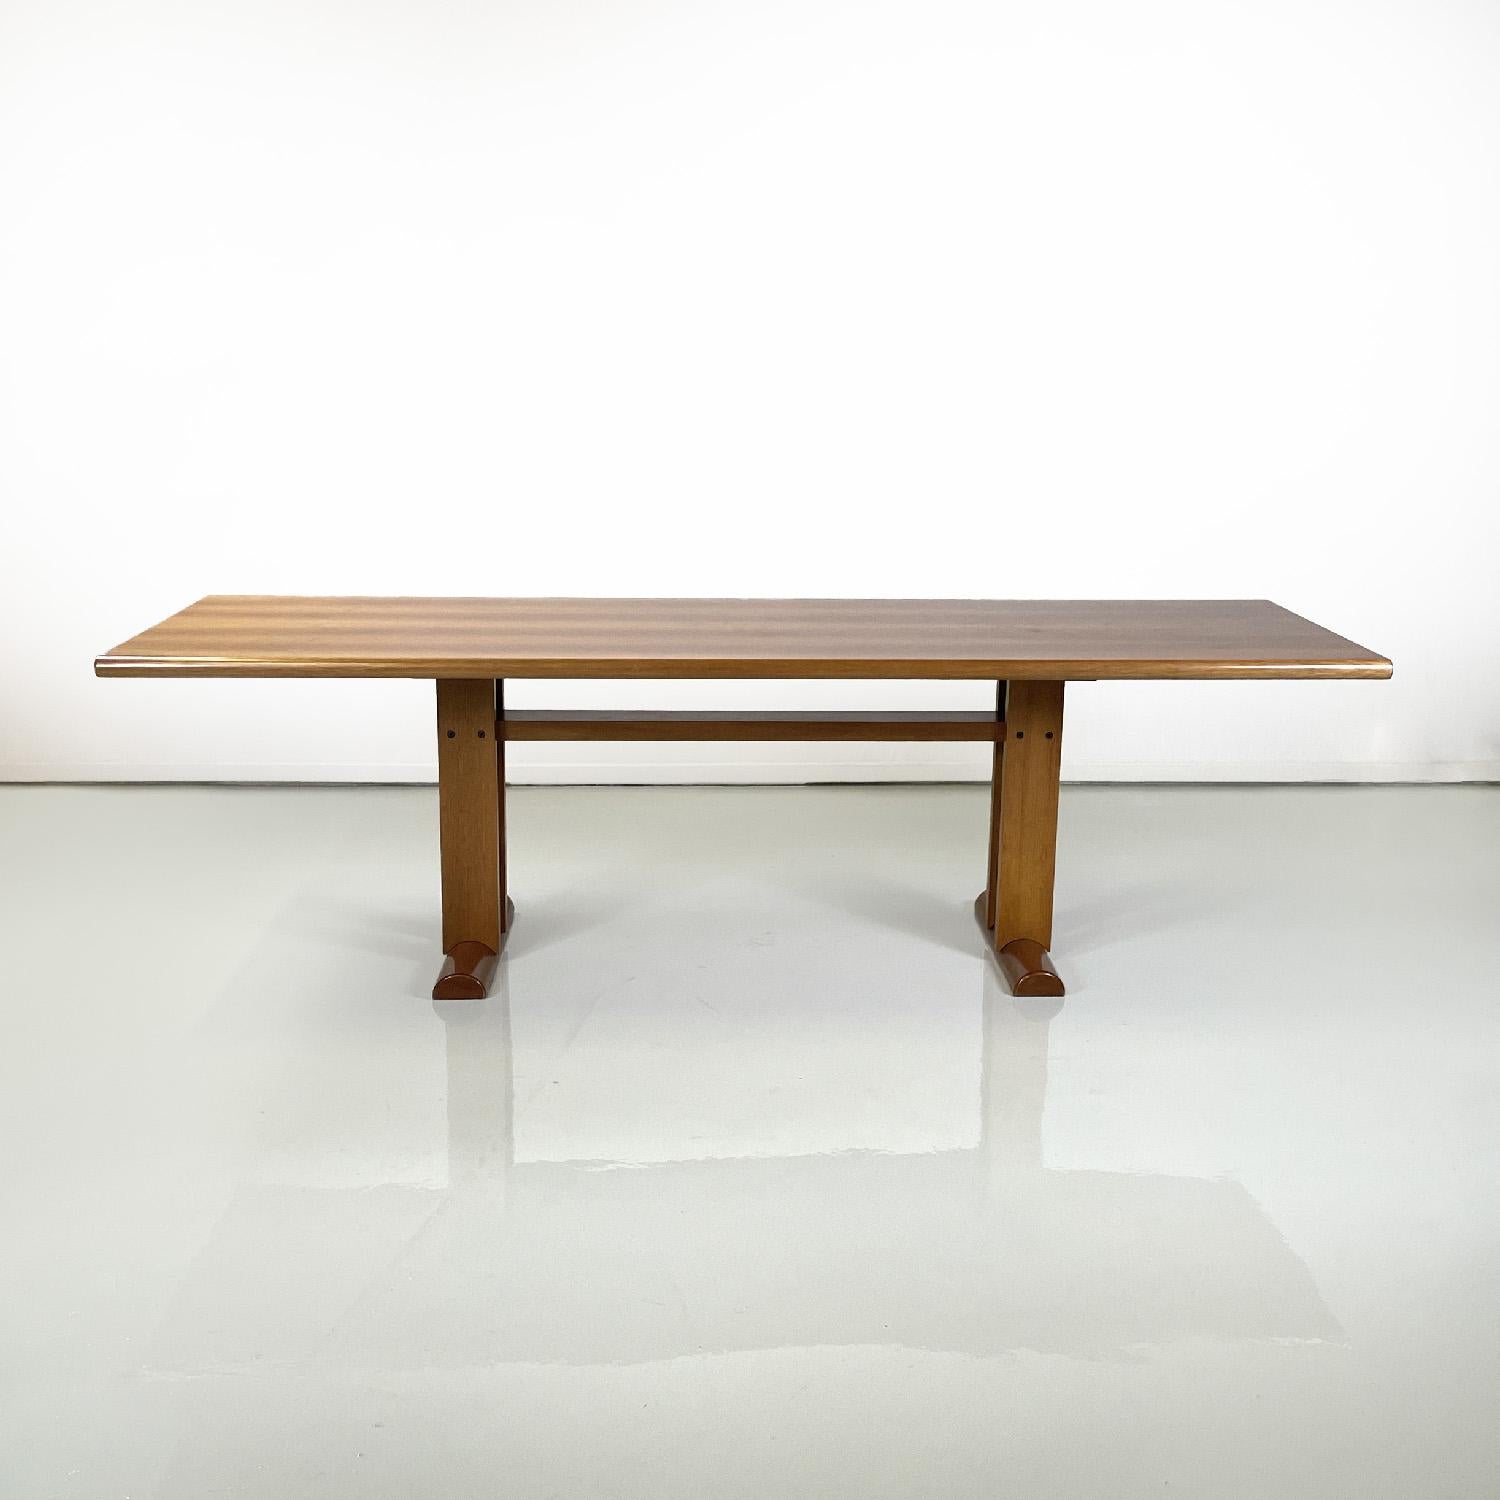 Table de salle à manger italienne moderne rectangulaire en bois, années 1980
Table de salle à manger rectangulaire entièrement en bois. Le plateau a des côtés avec un profil semi-circulaire, la structure porteuse est composée de quatre bandes